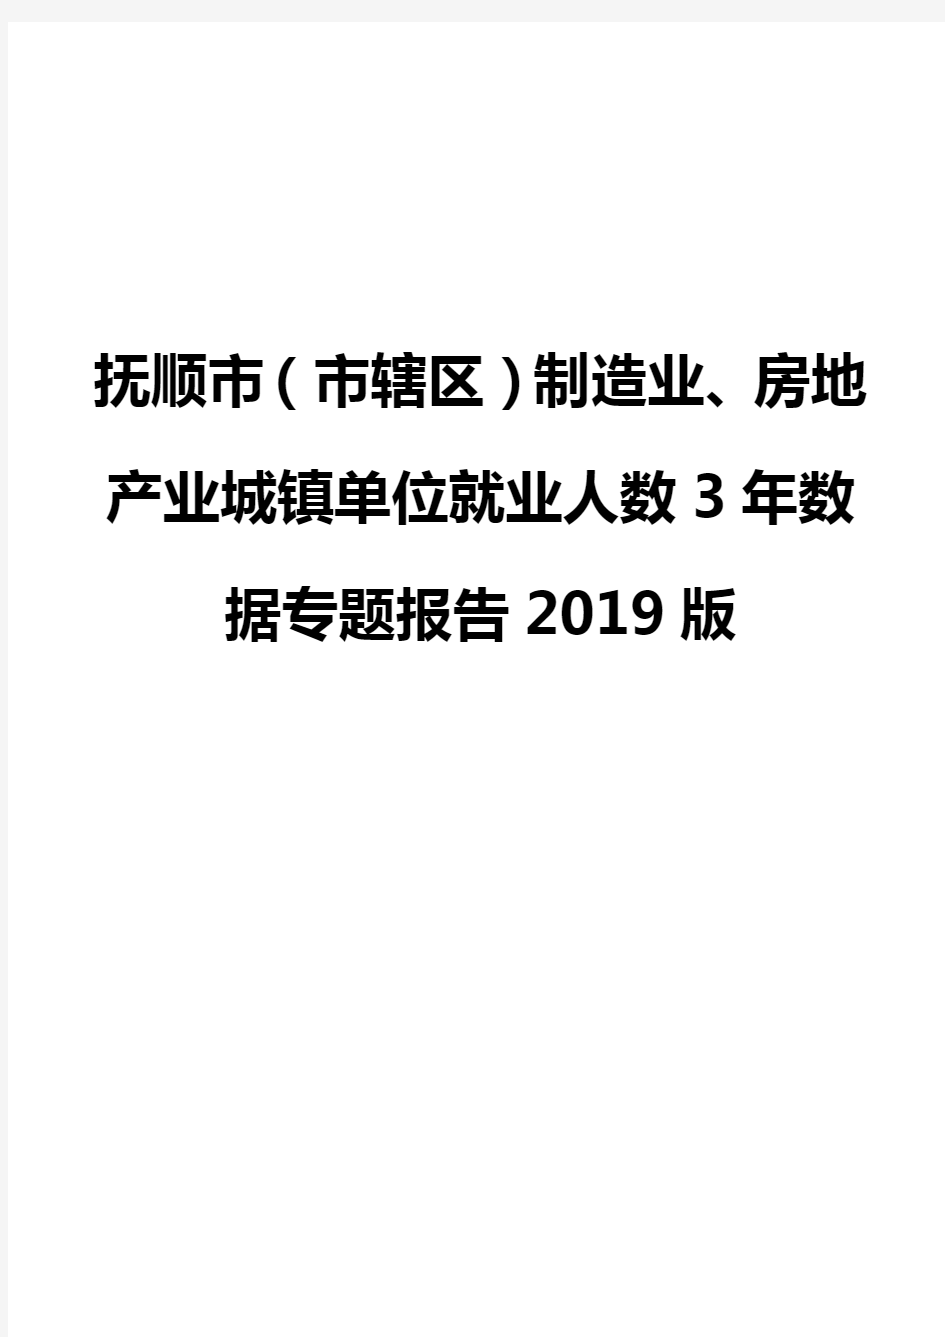 抚顺市(市辖区)制造业、房地产业城镇单位就业人数3年数据专题报告2019版